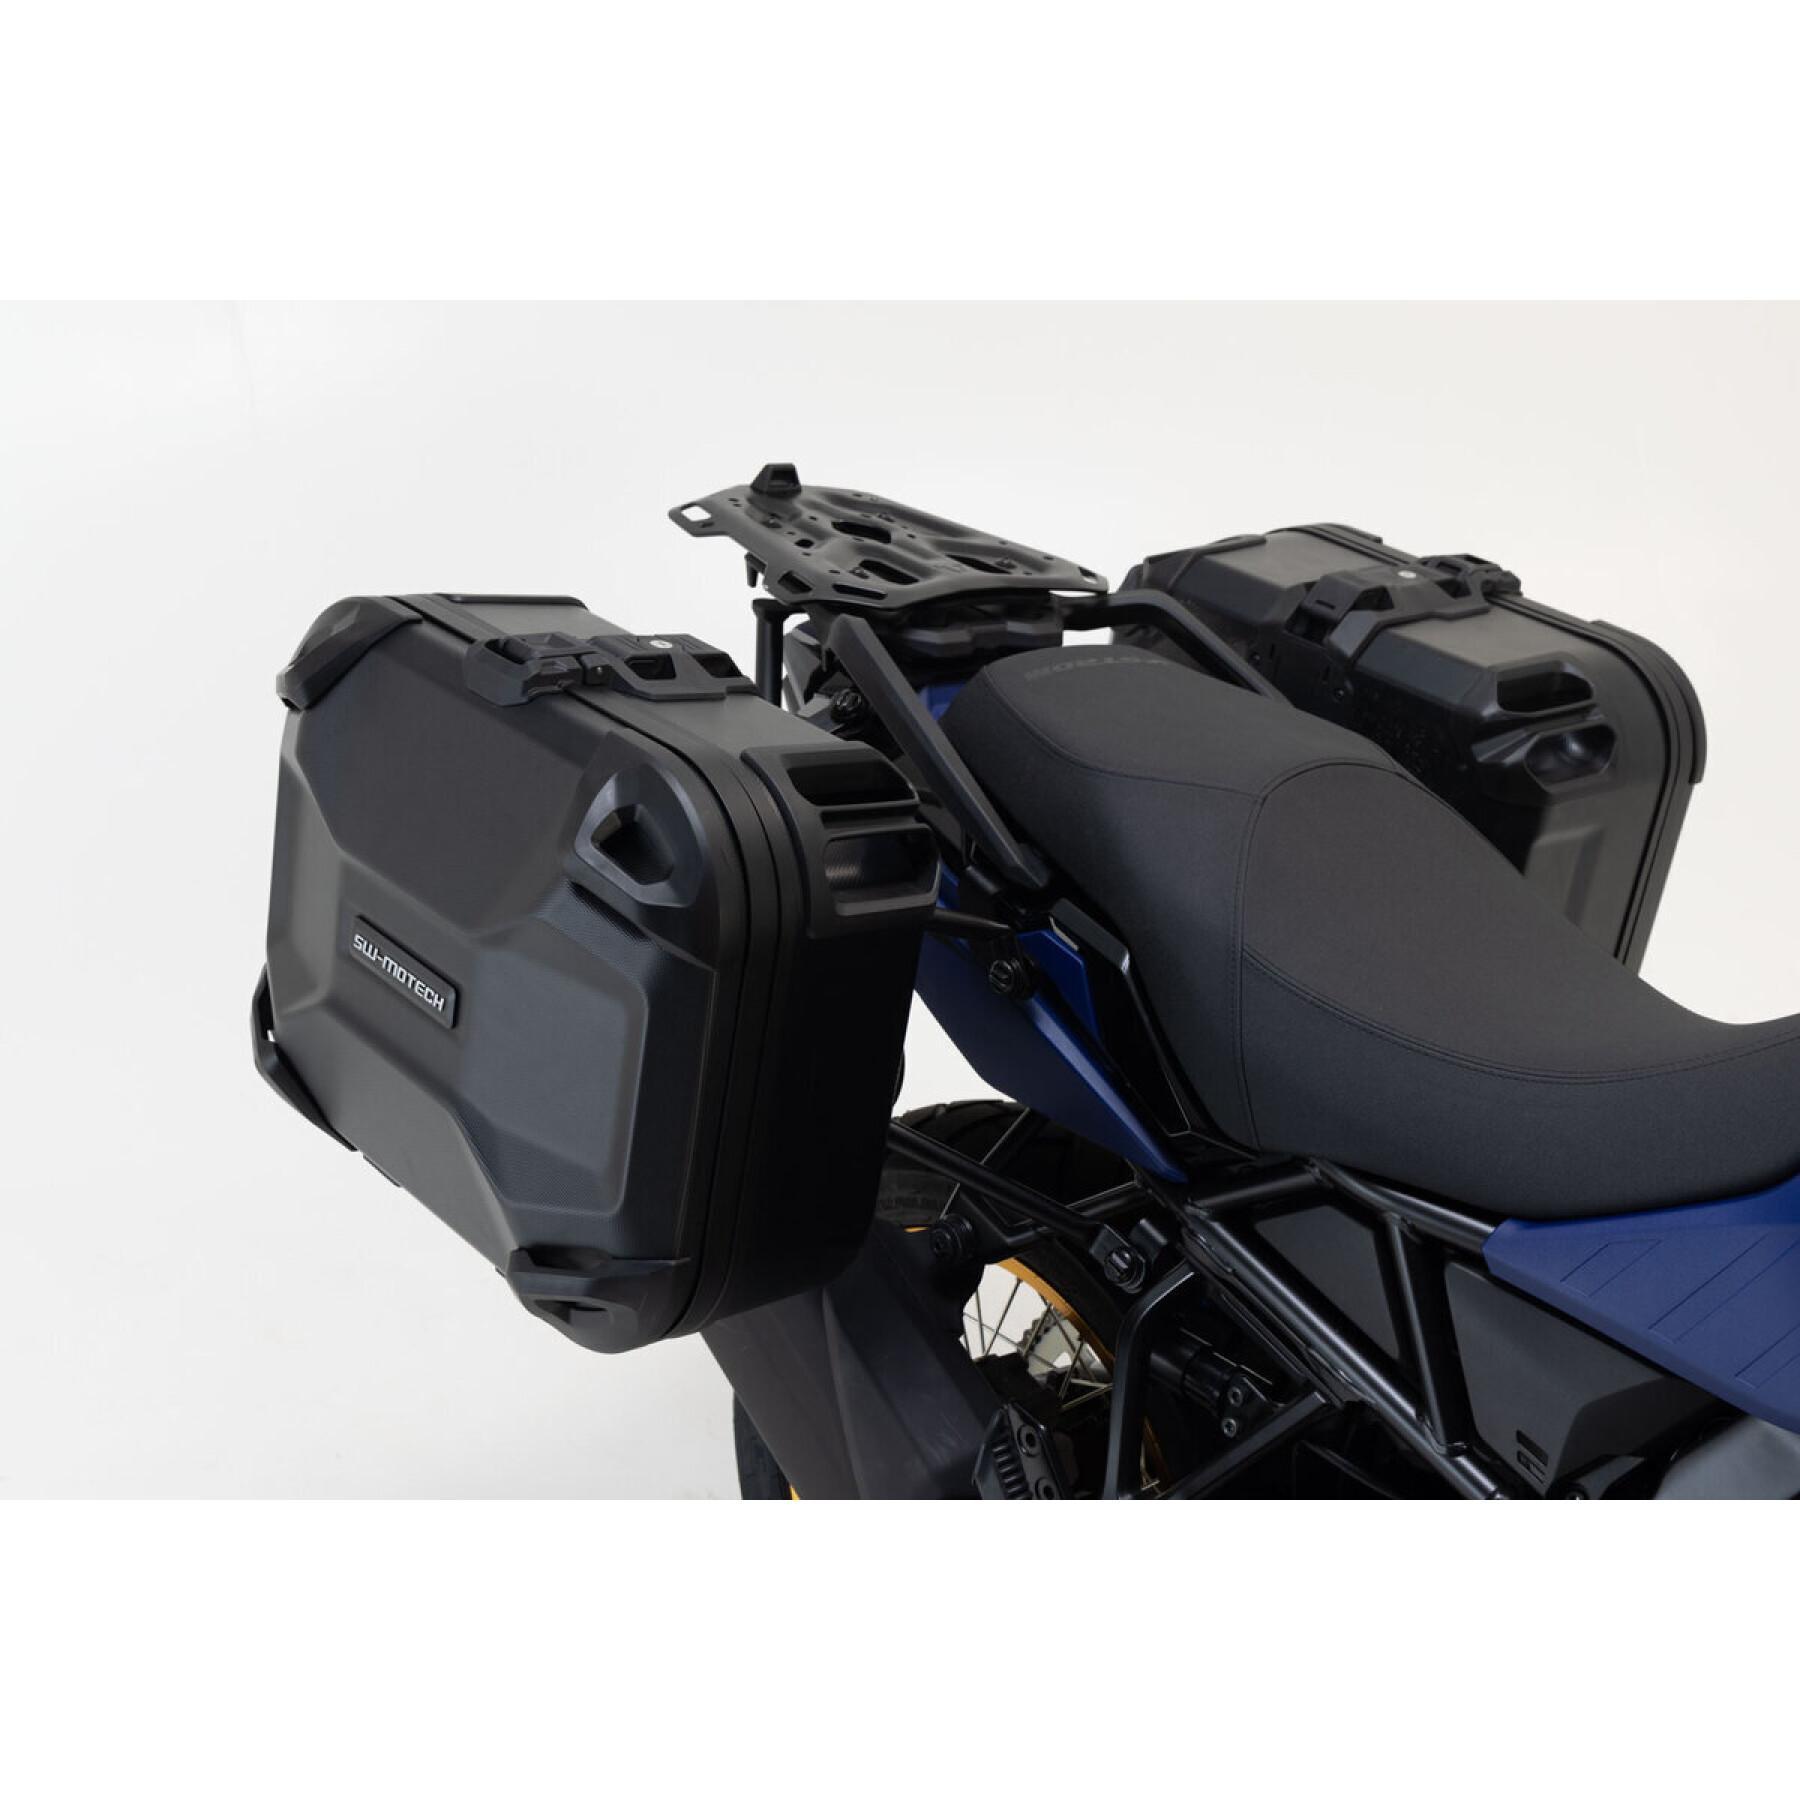 Système de valise latérale rigides moto SW-Motech DUSC MT-09 Tracer/900 Tracer (14-18) 66 L